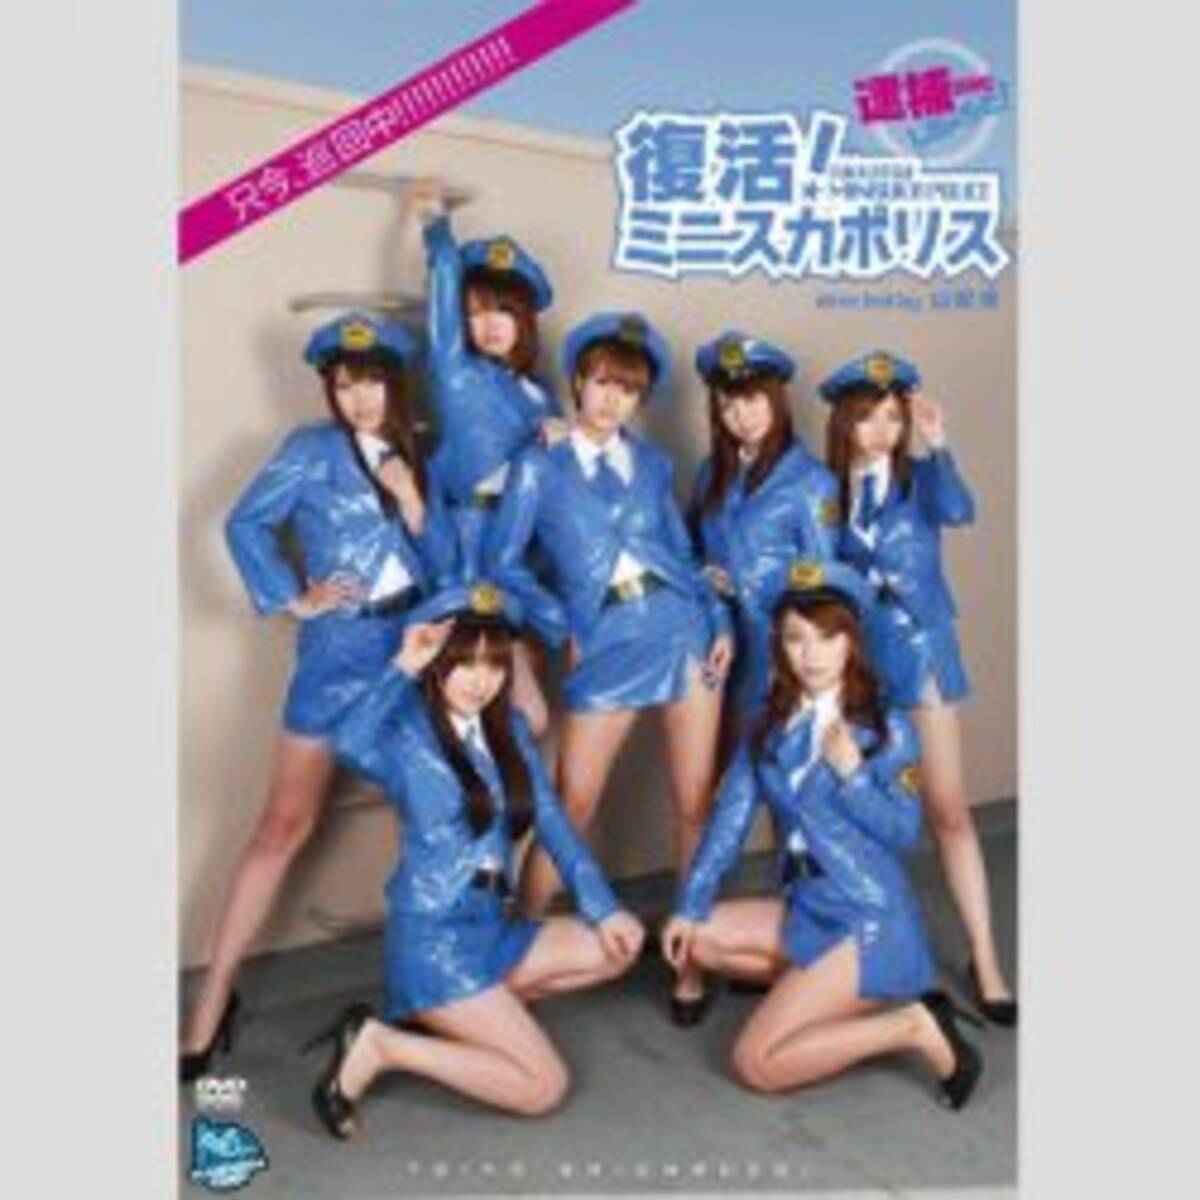 清水富美加よりさらに下だった 有名アイドルグループが4カ月で3万円の超薄給 17年2月23日 エキサイトニュース